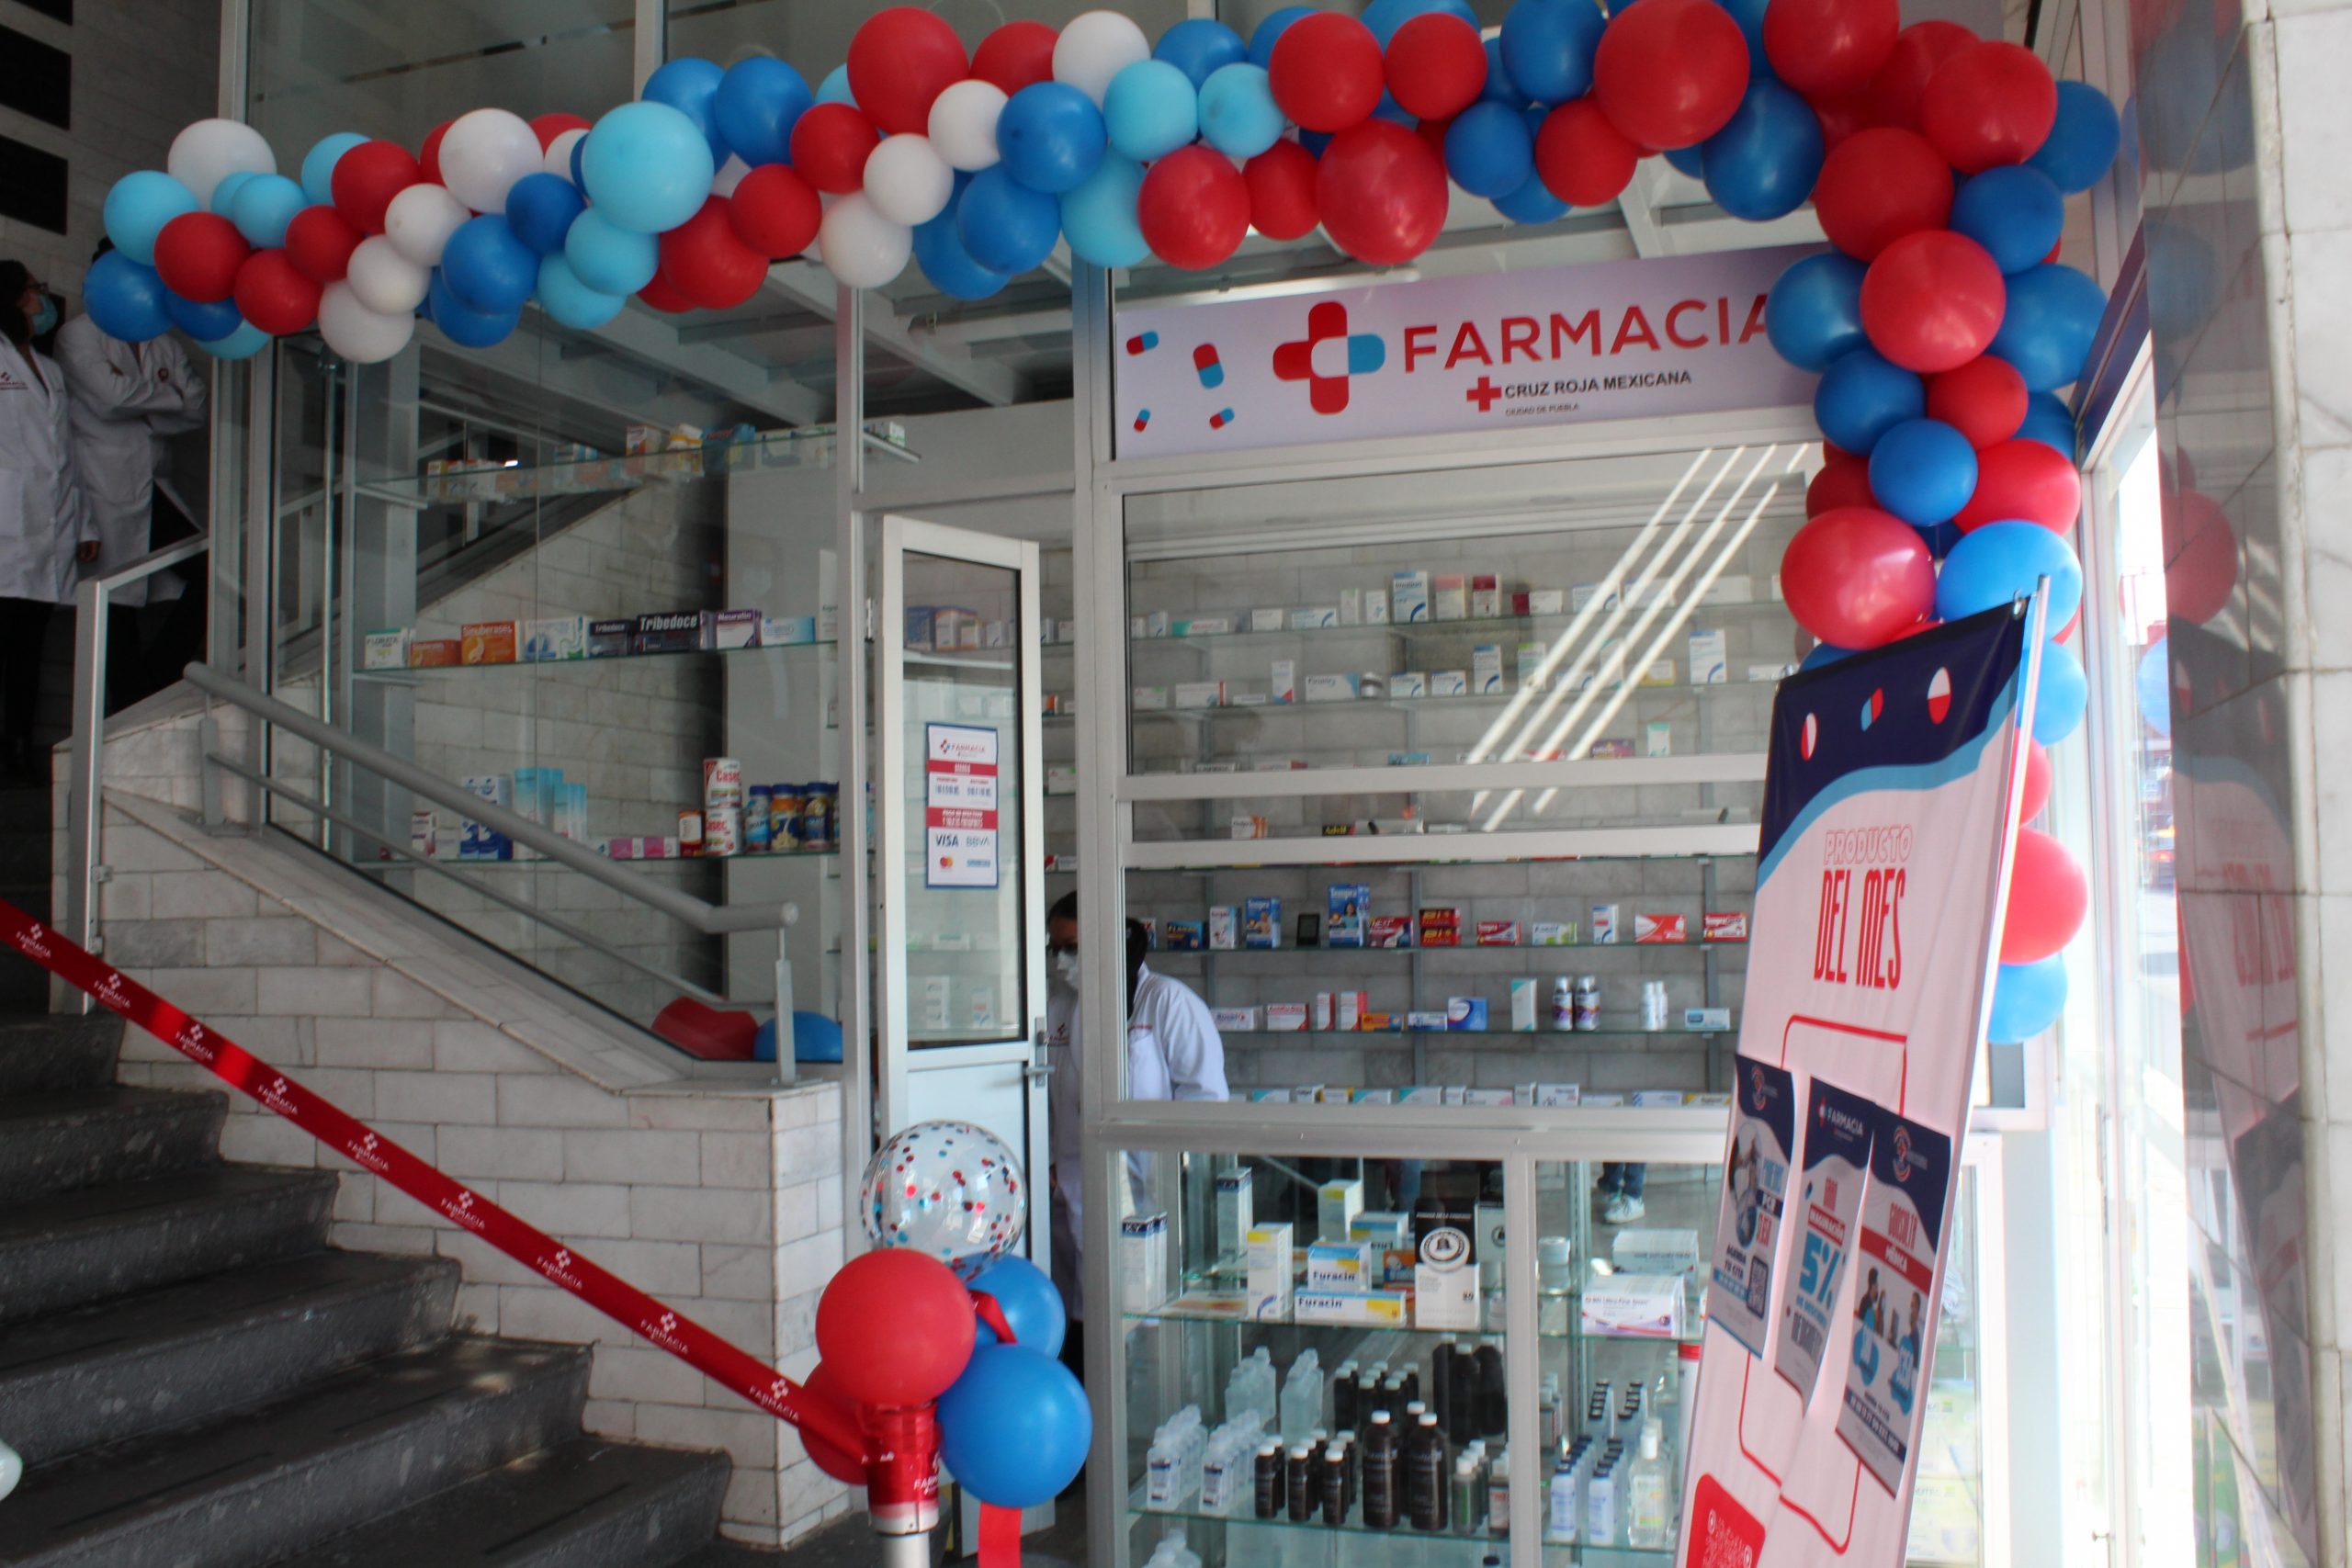 Cruz Roja: farmacia con venta al público general las 24 horas